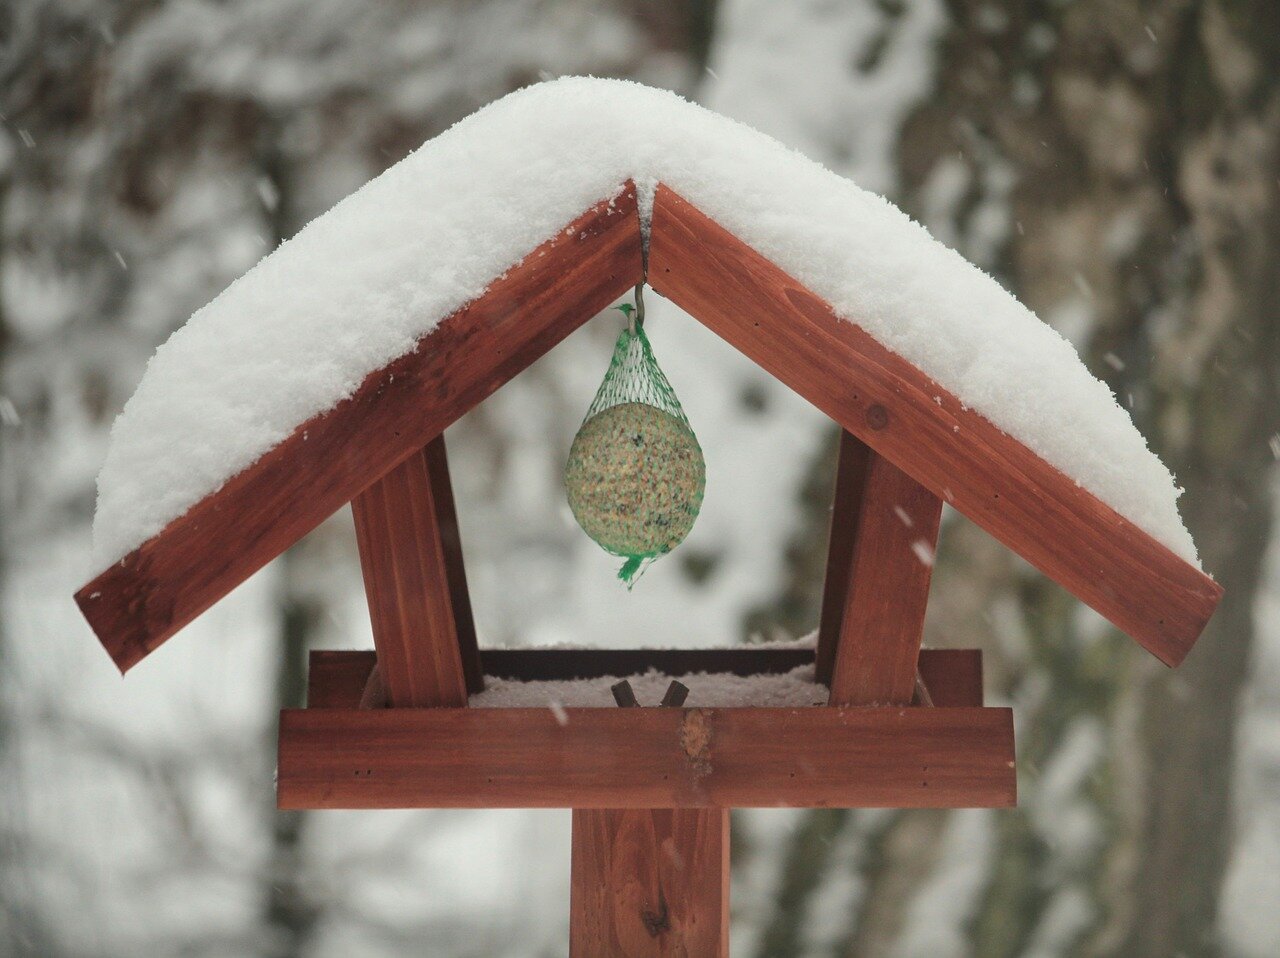 W karmniku wisi kulka z ziaren dla ptaków. Daszek karmnika przykryty jest śniegiem. 